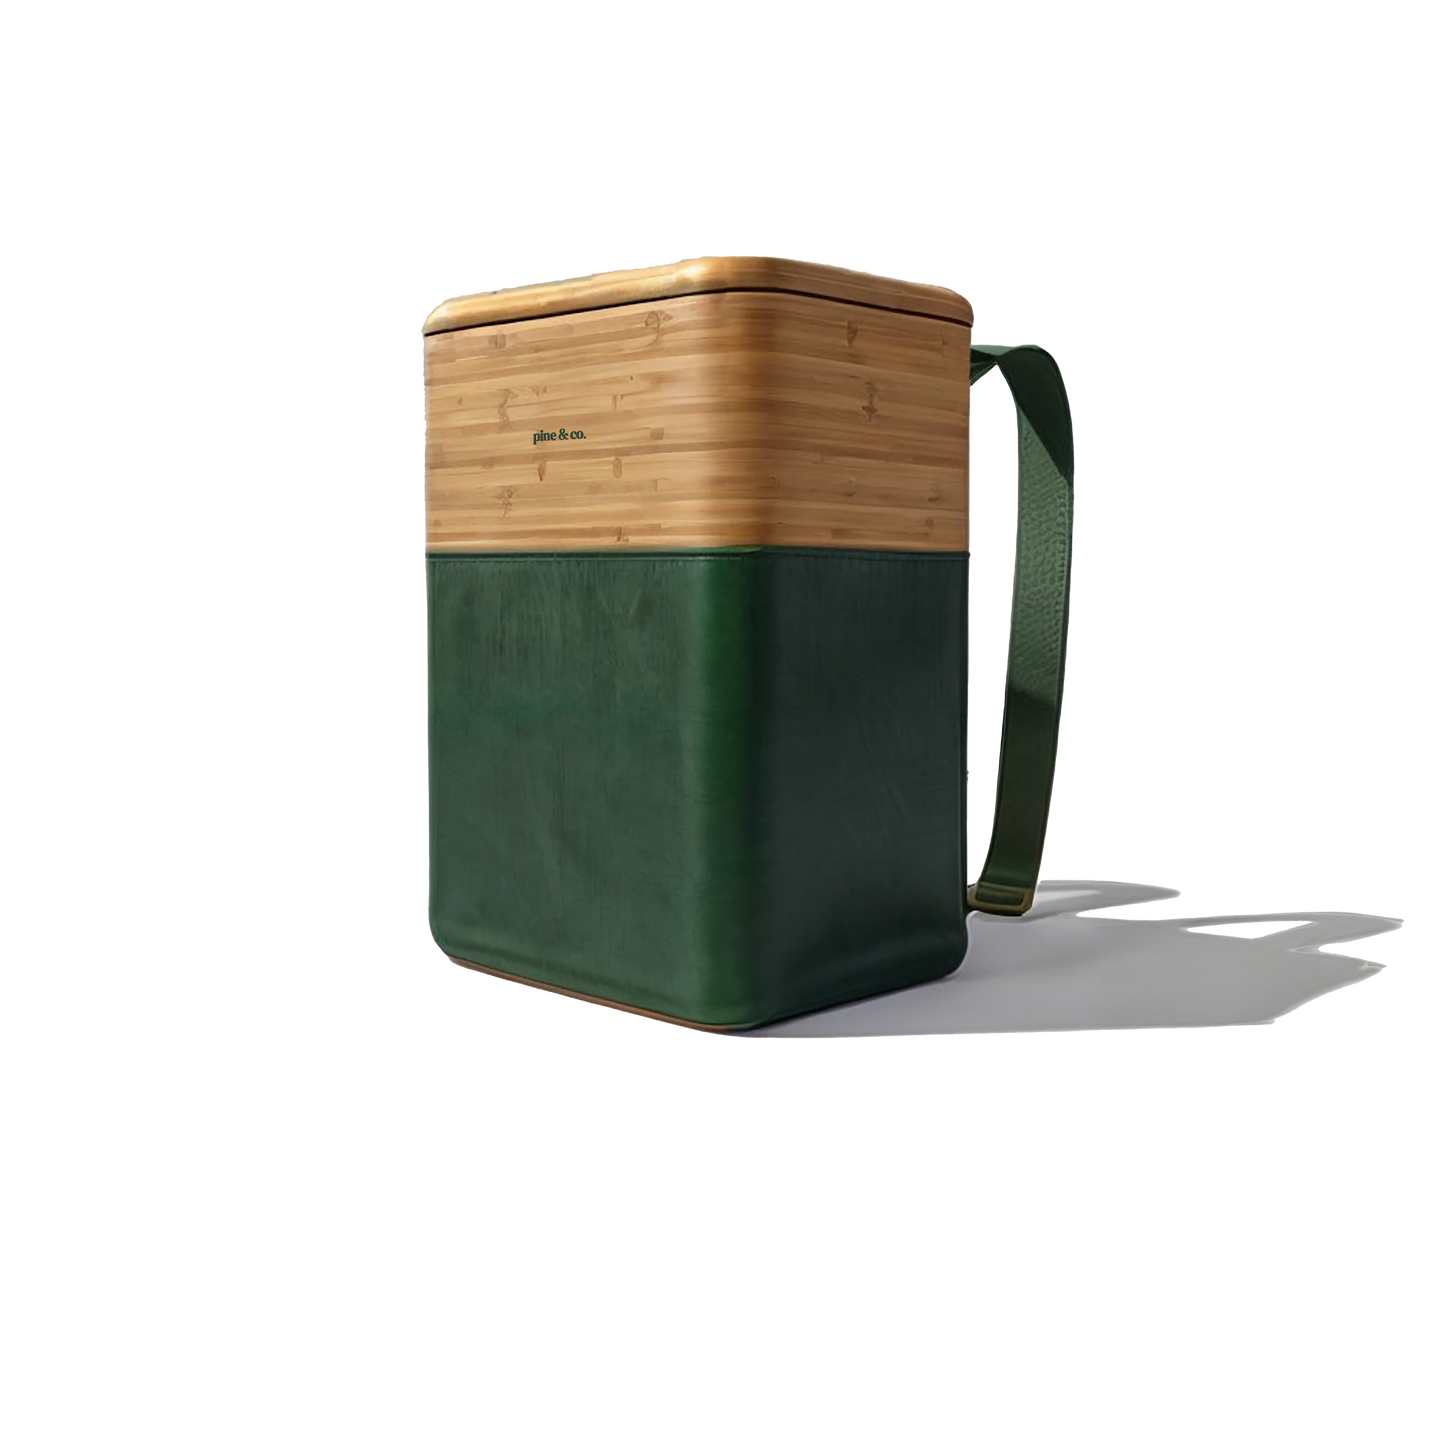 Pine & Co. Alfresco Picnic Basket Box